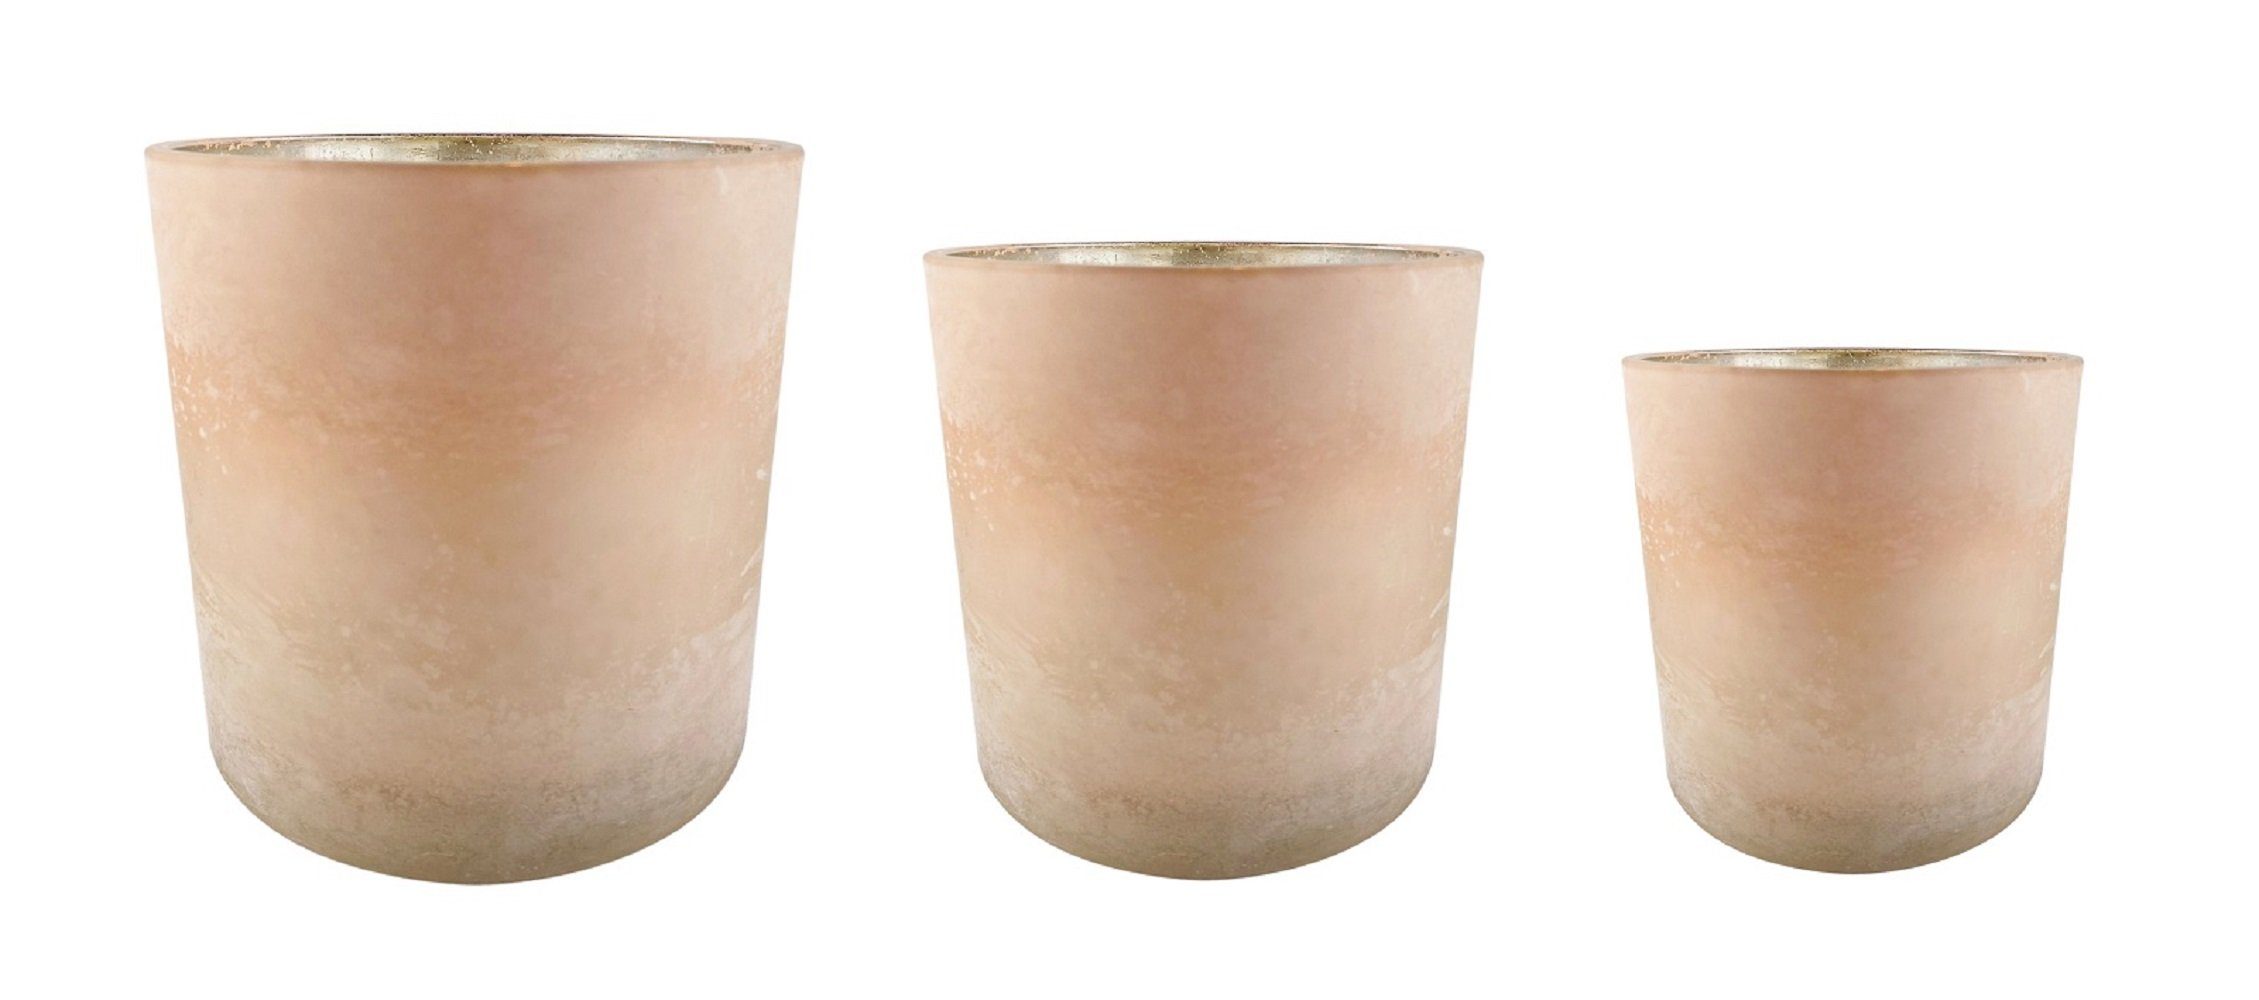 Parts4Living Windlicht Glas Teelichthalter im 3er Set Teelichtglas Kerzenglas Kerzenhalter gefrostet matt hellrosé innen antik gold 7x8 cm, 9x10 cm und 15x15 cm (Spar-Set, 3er Set), im romantischen Stil